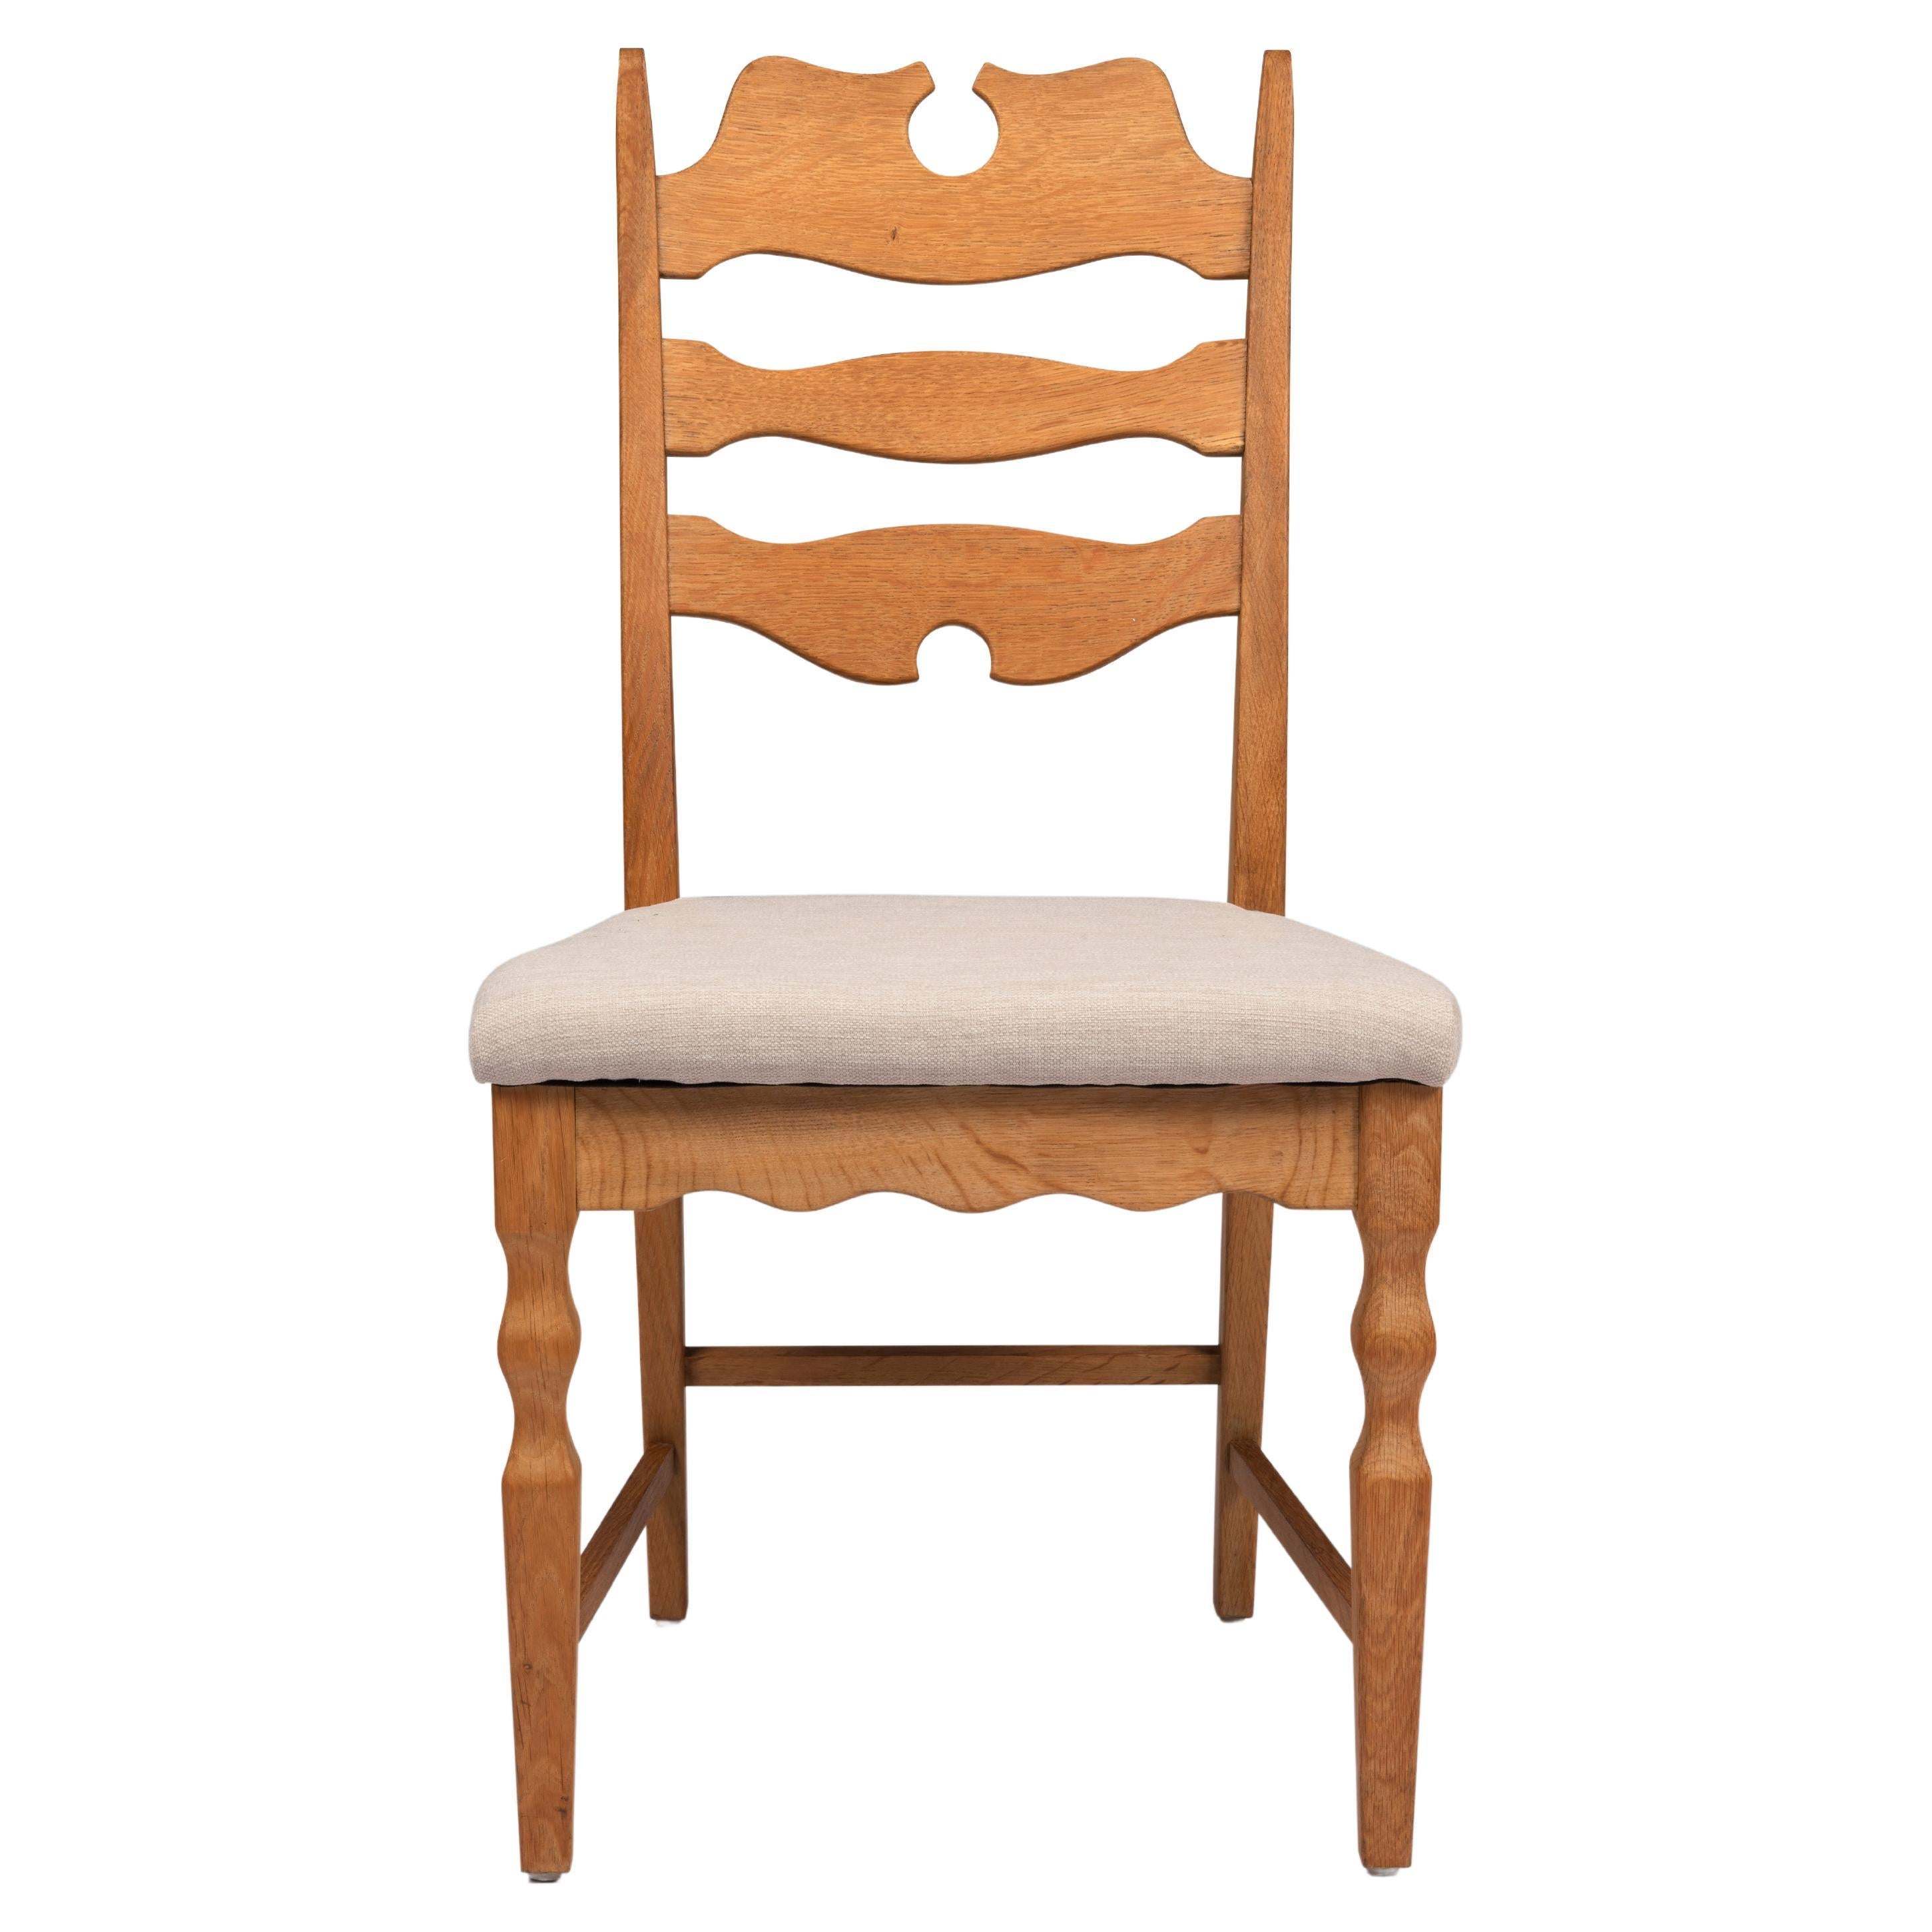 Chaises de salle à manger Henning Kjærnulf en chêne recouvertes d'une toile chinée. Belle et pure. Fabriqué par EG Möbler dans les années 1960.